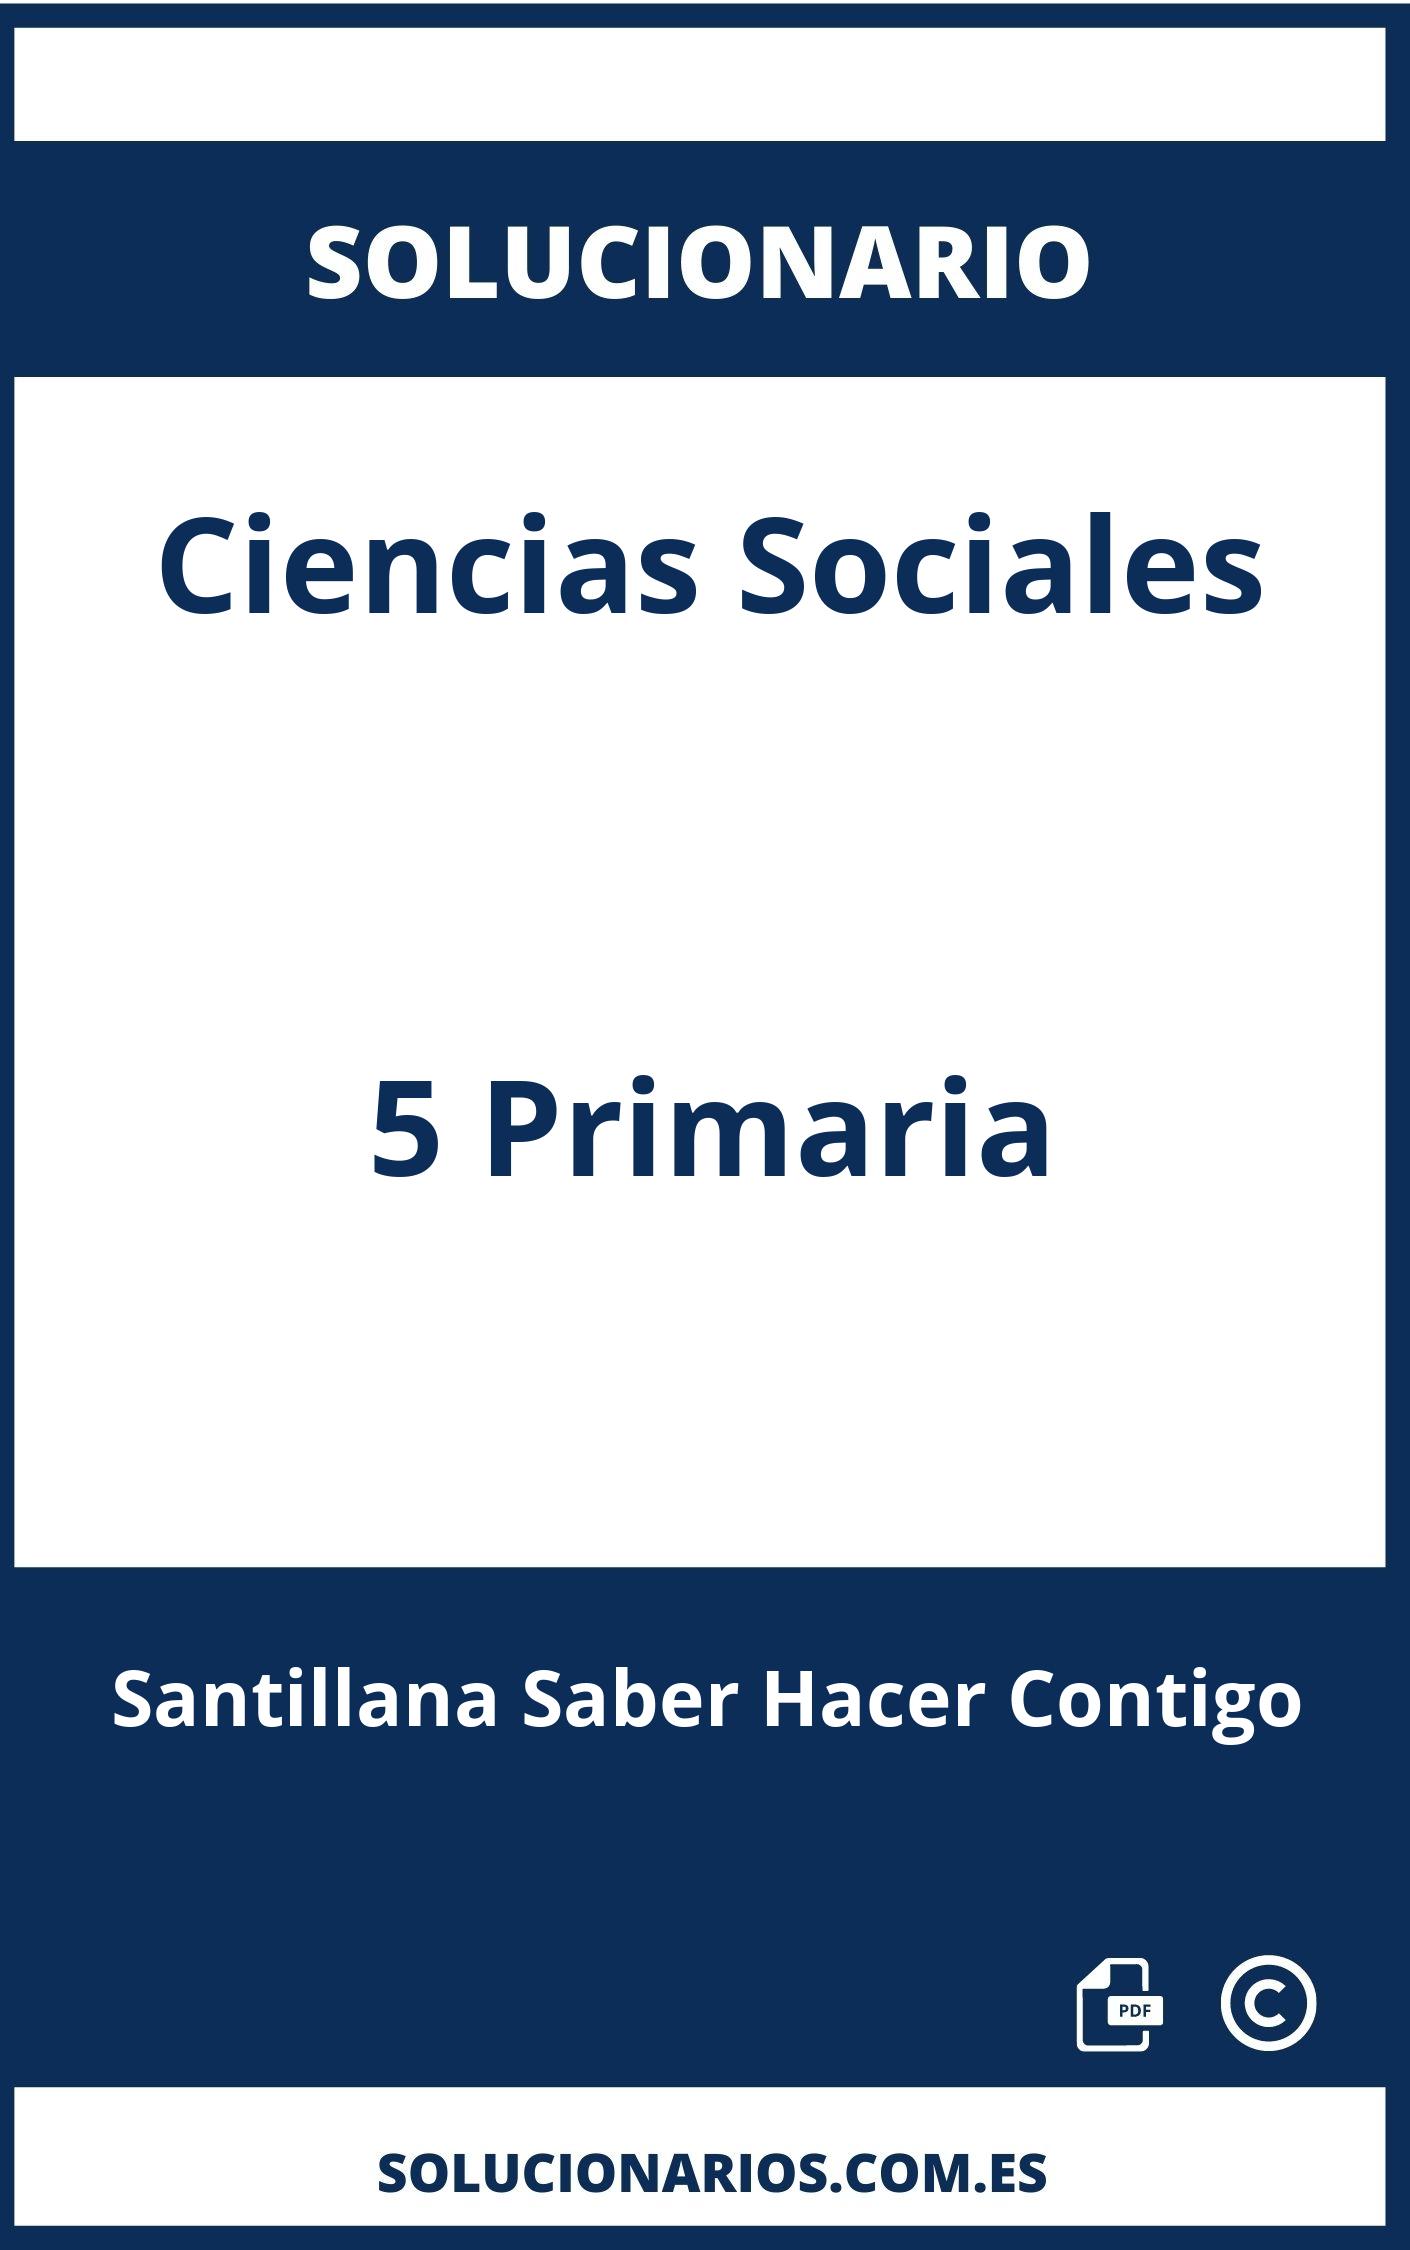 Solucionario De Ciencias Sociales 5 Primaria Santillana Saber Hacer Contigo 5164